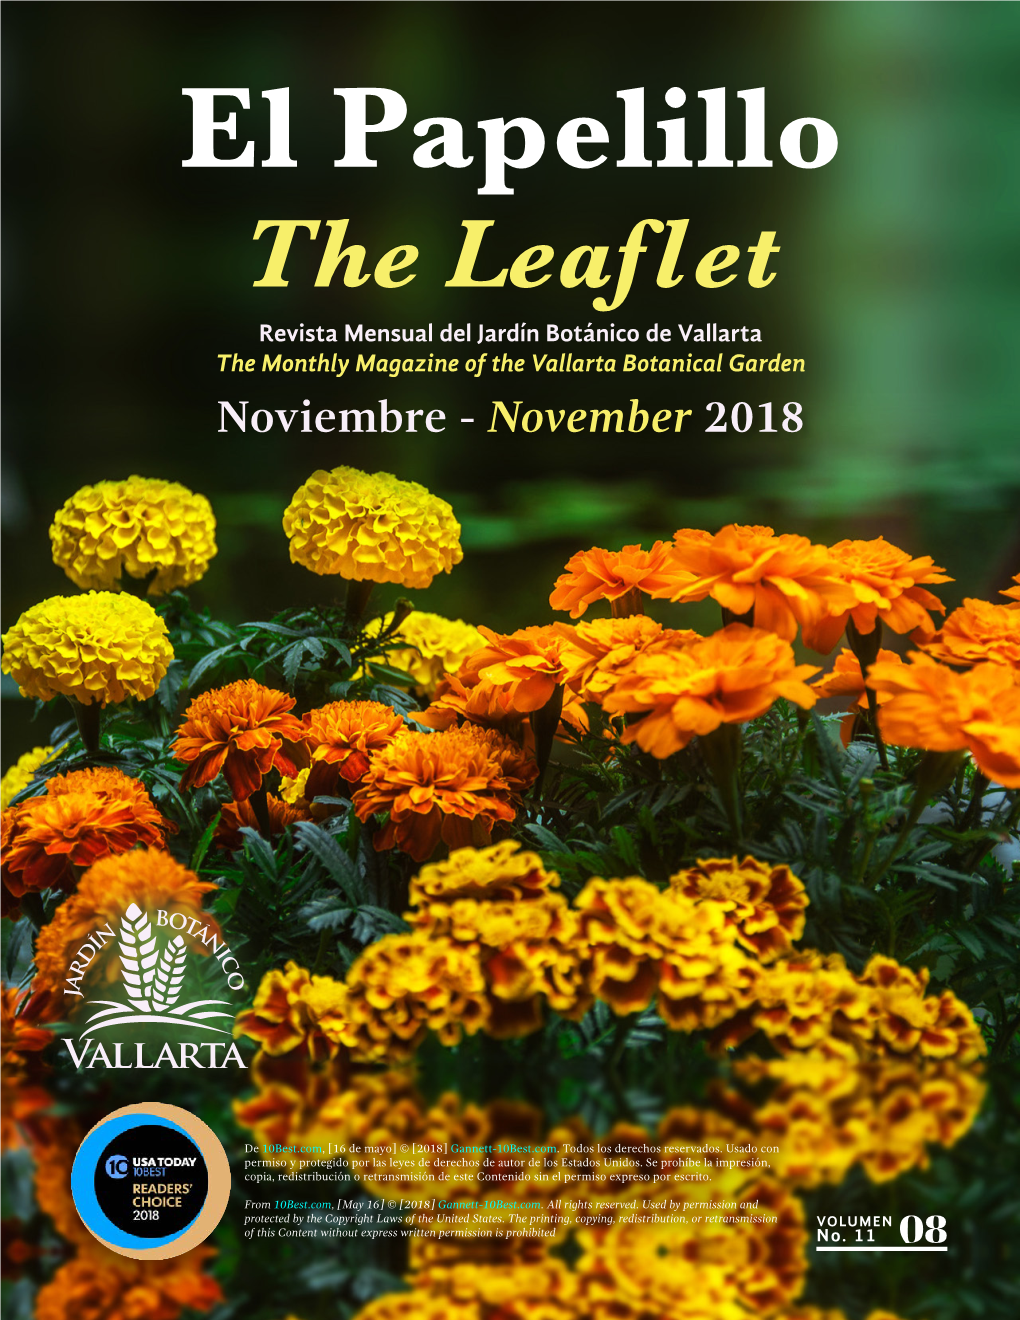 The Leaflet Revista Mensual Del Jardín Botánico De Vallarta the Monthly Magazine of the Vallarta Botanical Garden Noviembre - November 2018